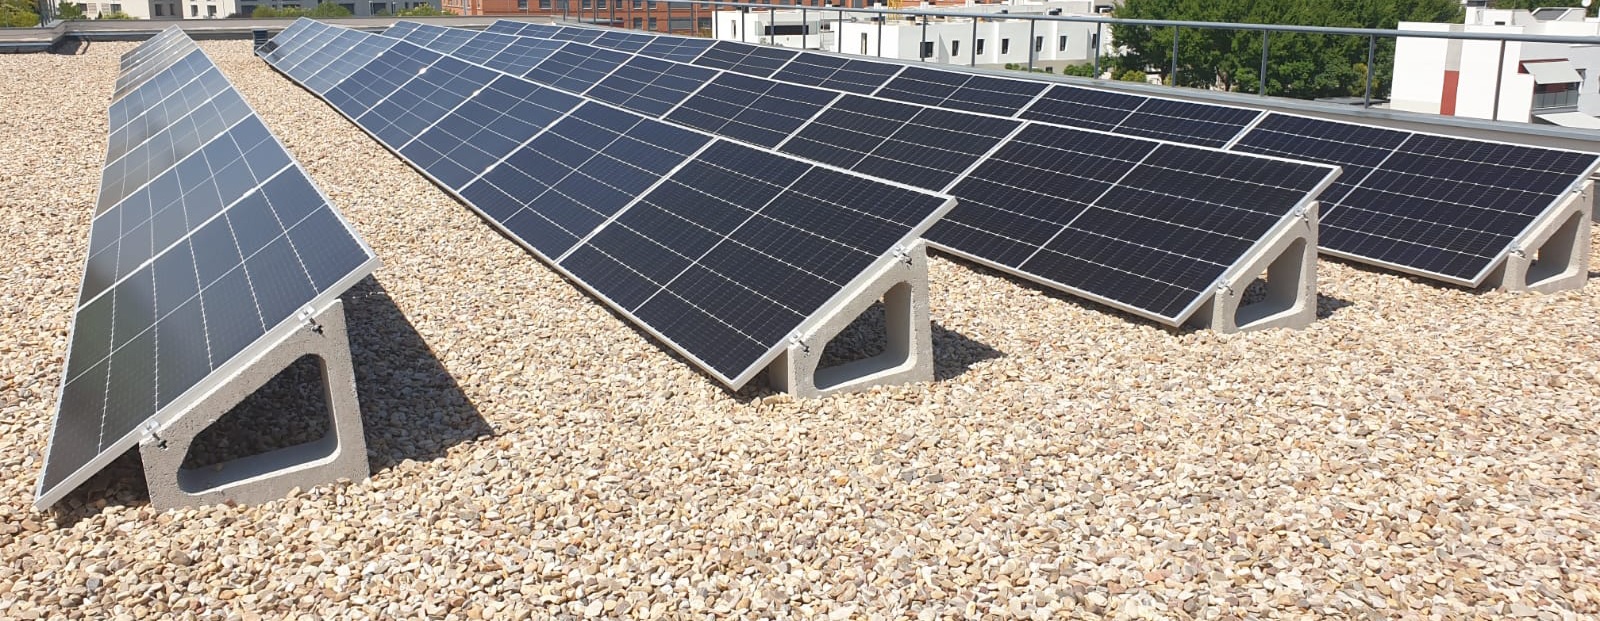 Instalación de paneles solares en estos centros educativos que producen ahorros energéticos en cada uno de ellos y evitan emisiones de CO2 a la atmosfera